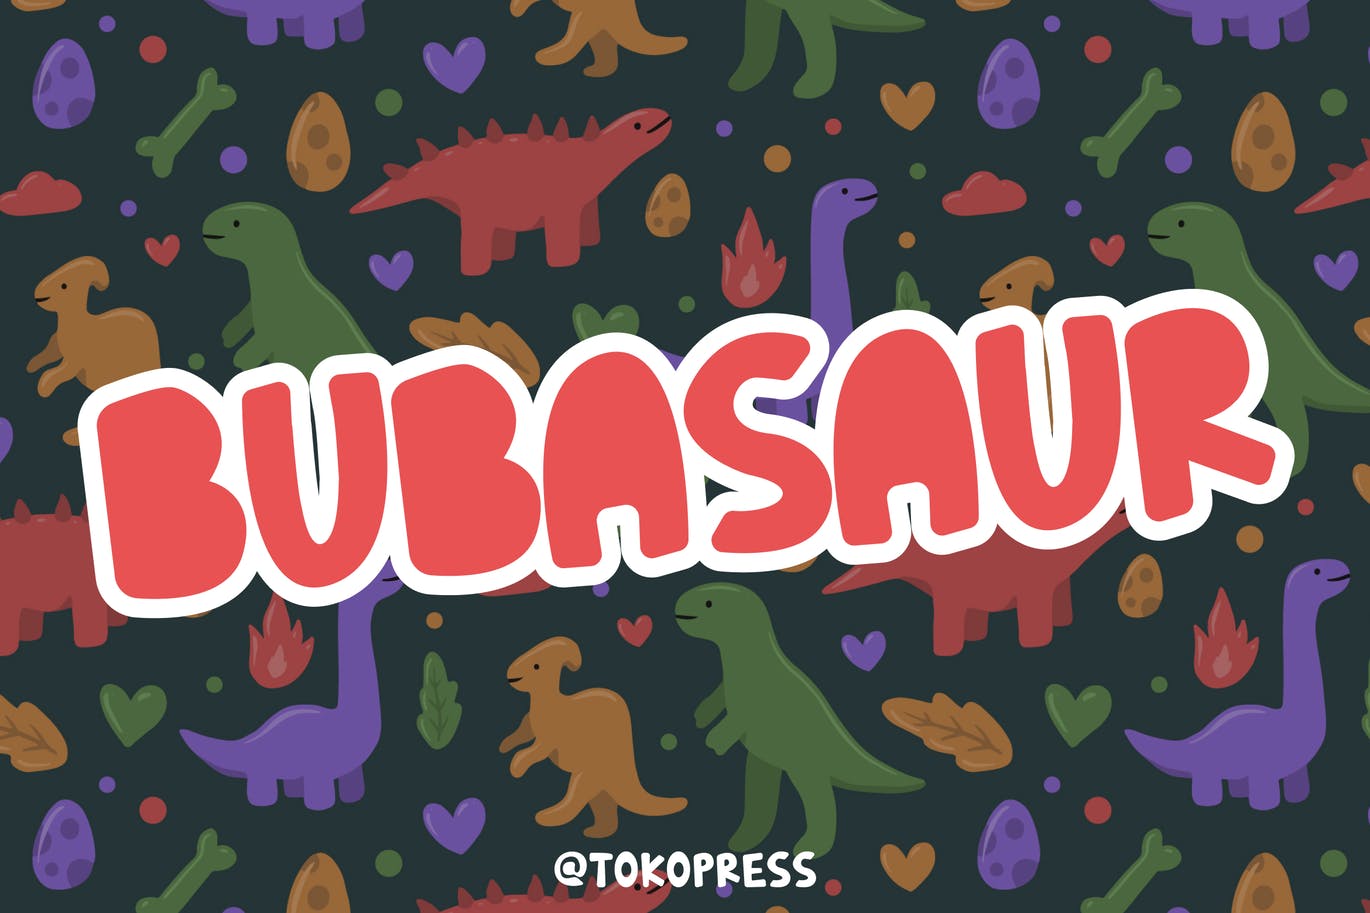 Bubasaur